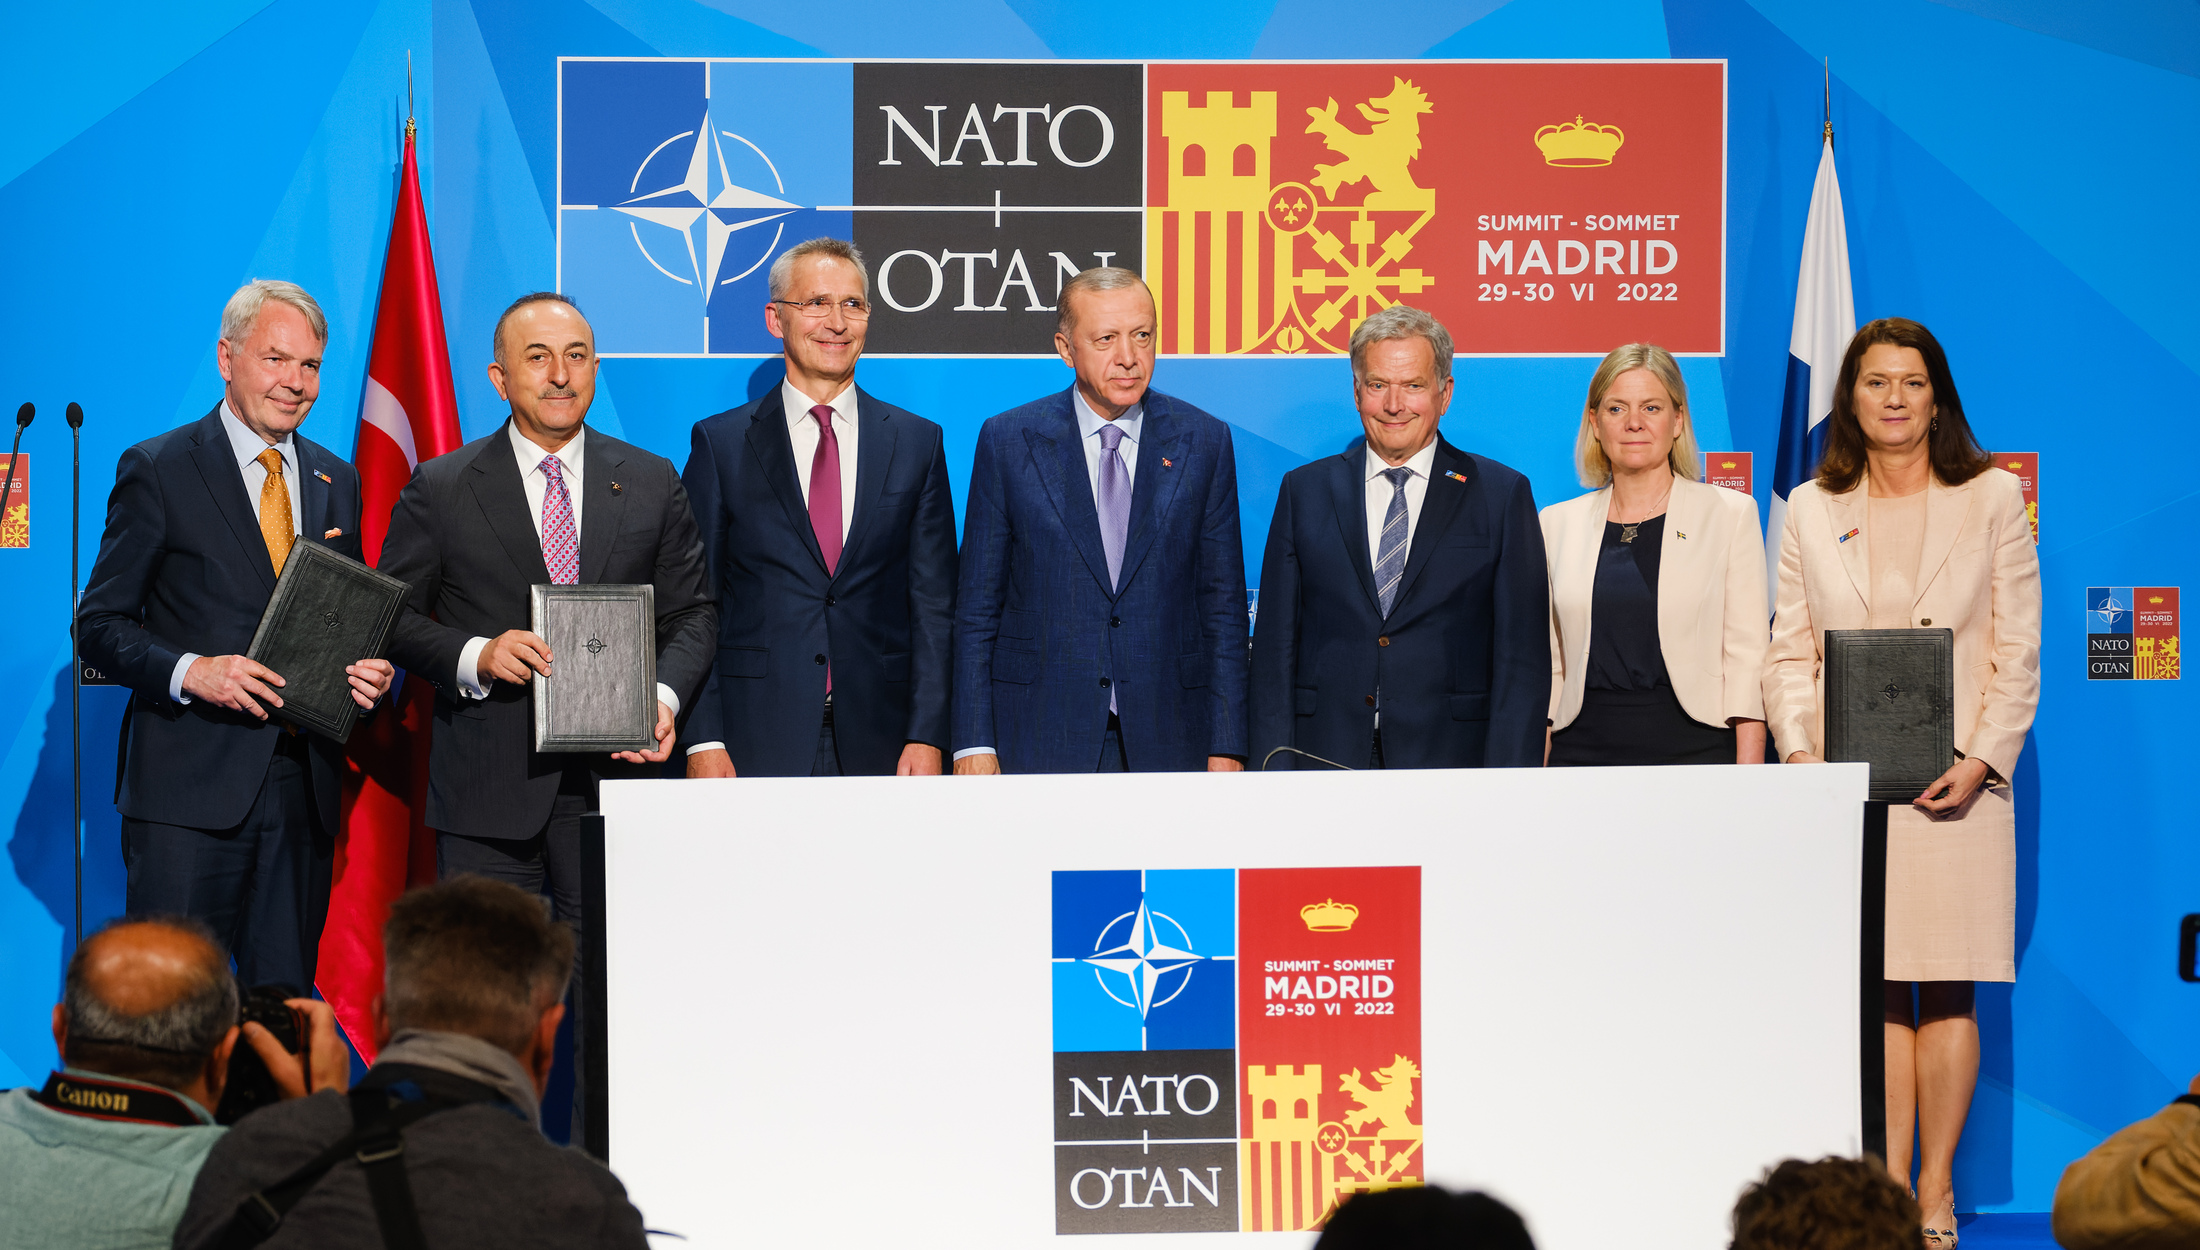 Нато дзен. Саммит НАТО В Мадриде 2022. Мадридский саммит НАТО В 2022 году. Саммит в Мадриде 1997. Саммит НАТО В Мадриде.